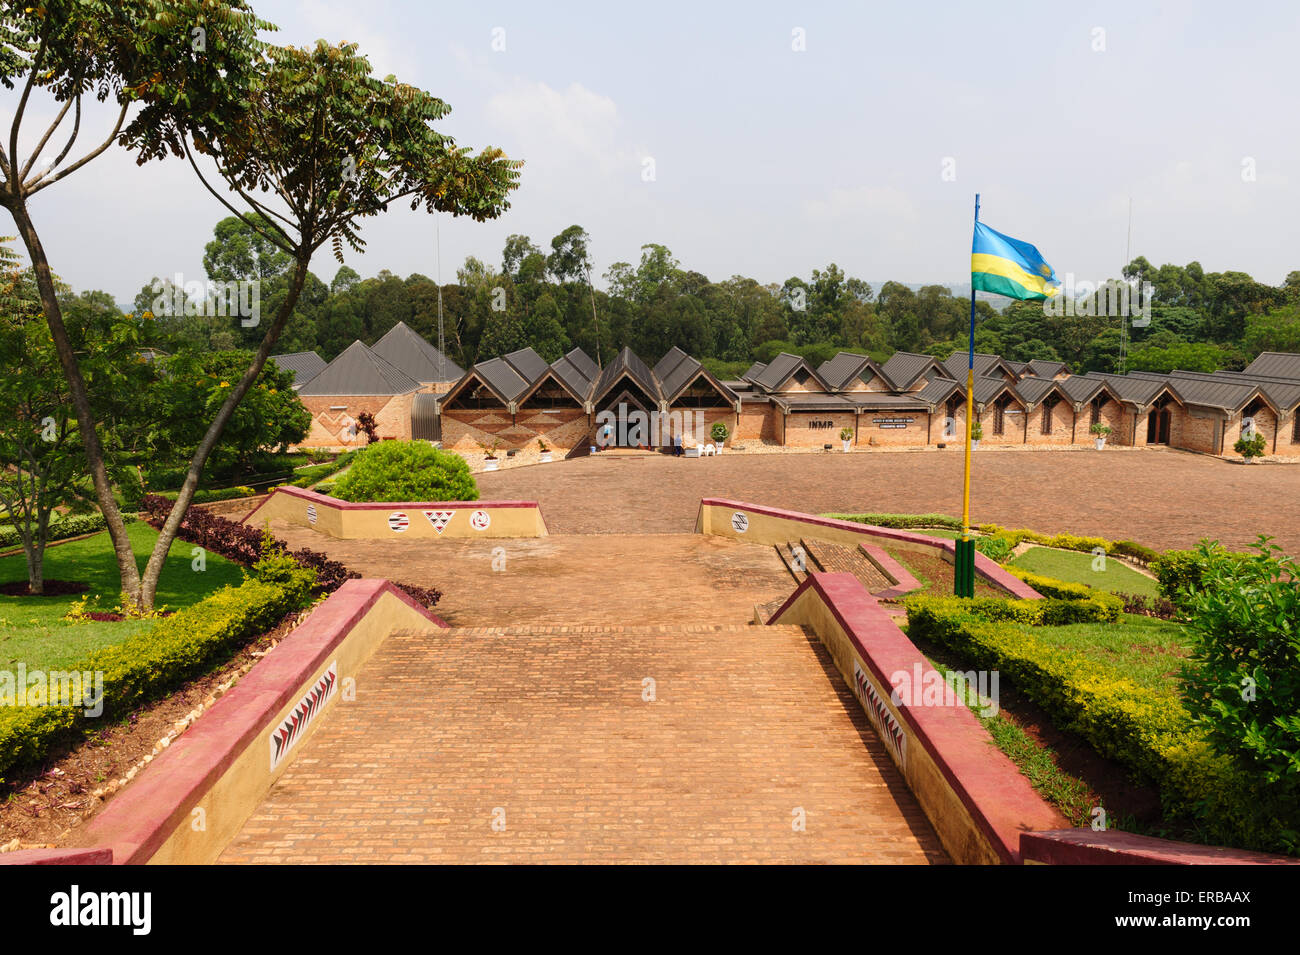 The Ethnographic Museum in Butare, Rwanda Stock Photo